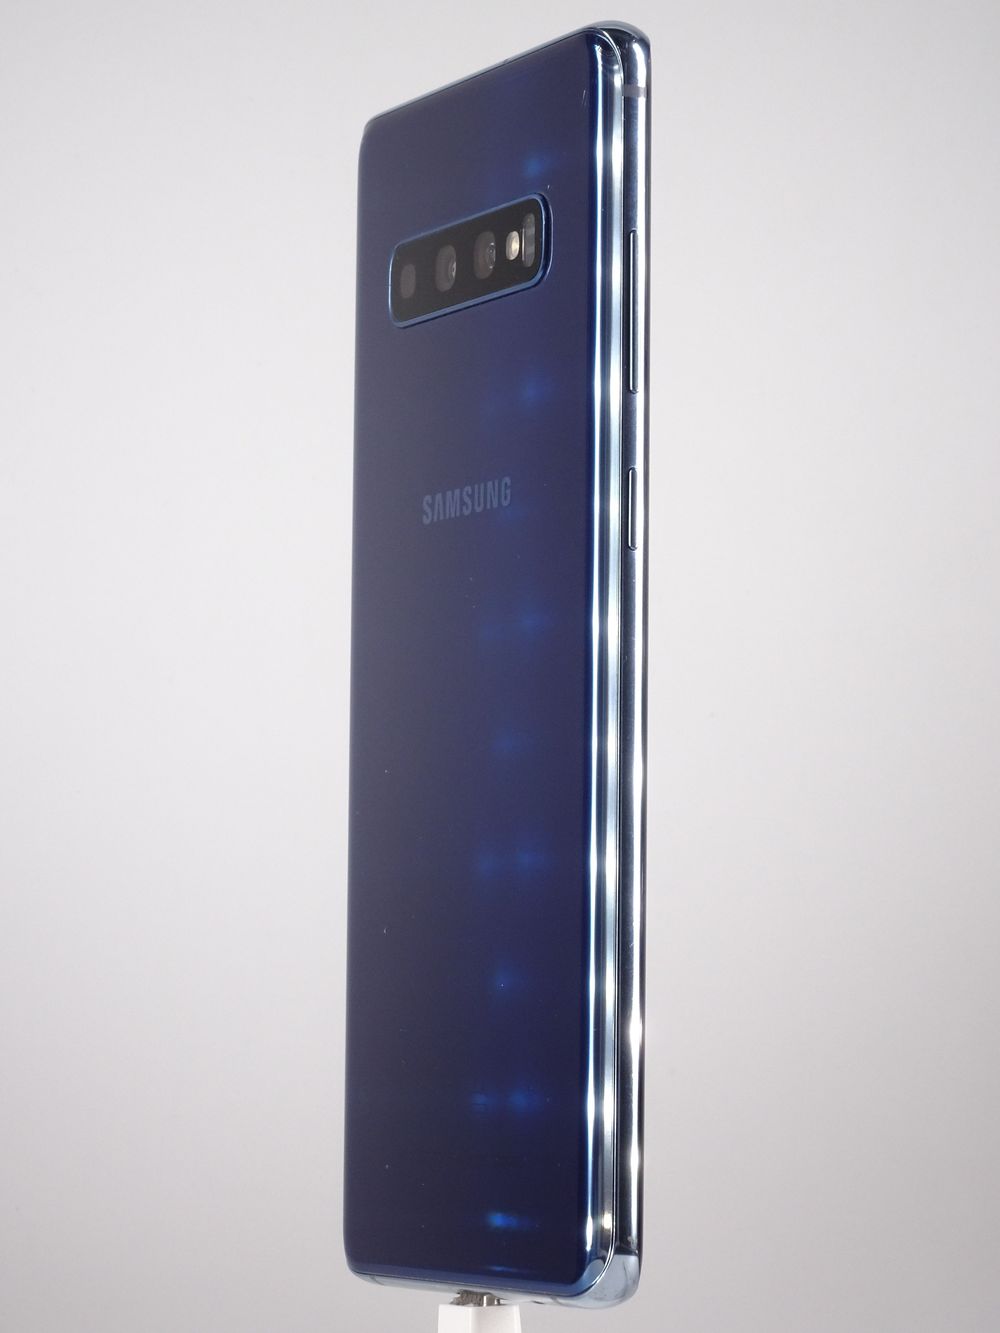 Мобилен телефон Samsung, Galaxy S10 Plus, 128 GB, Prism Blue,  Като нов